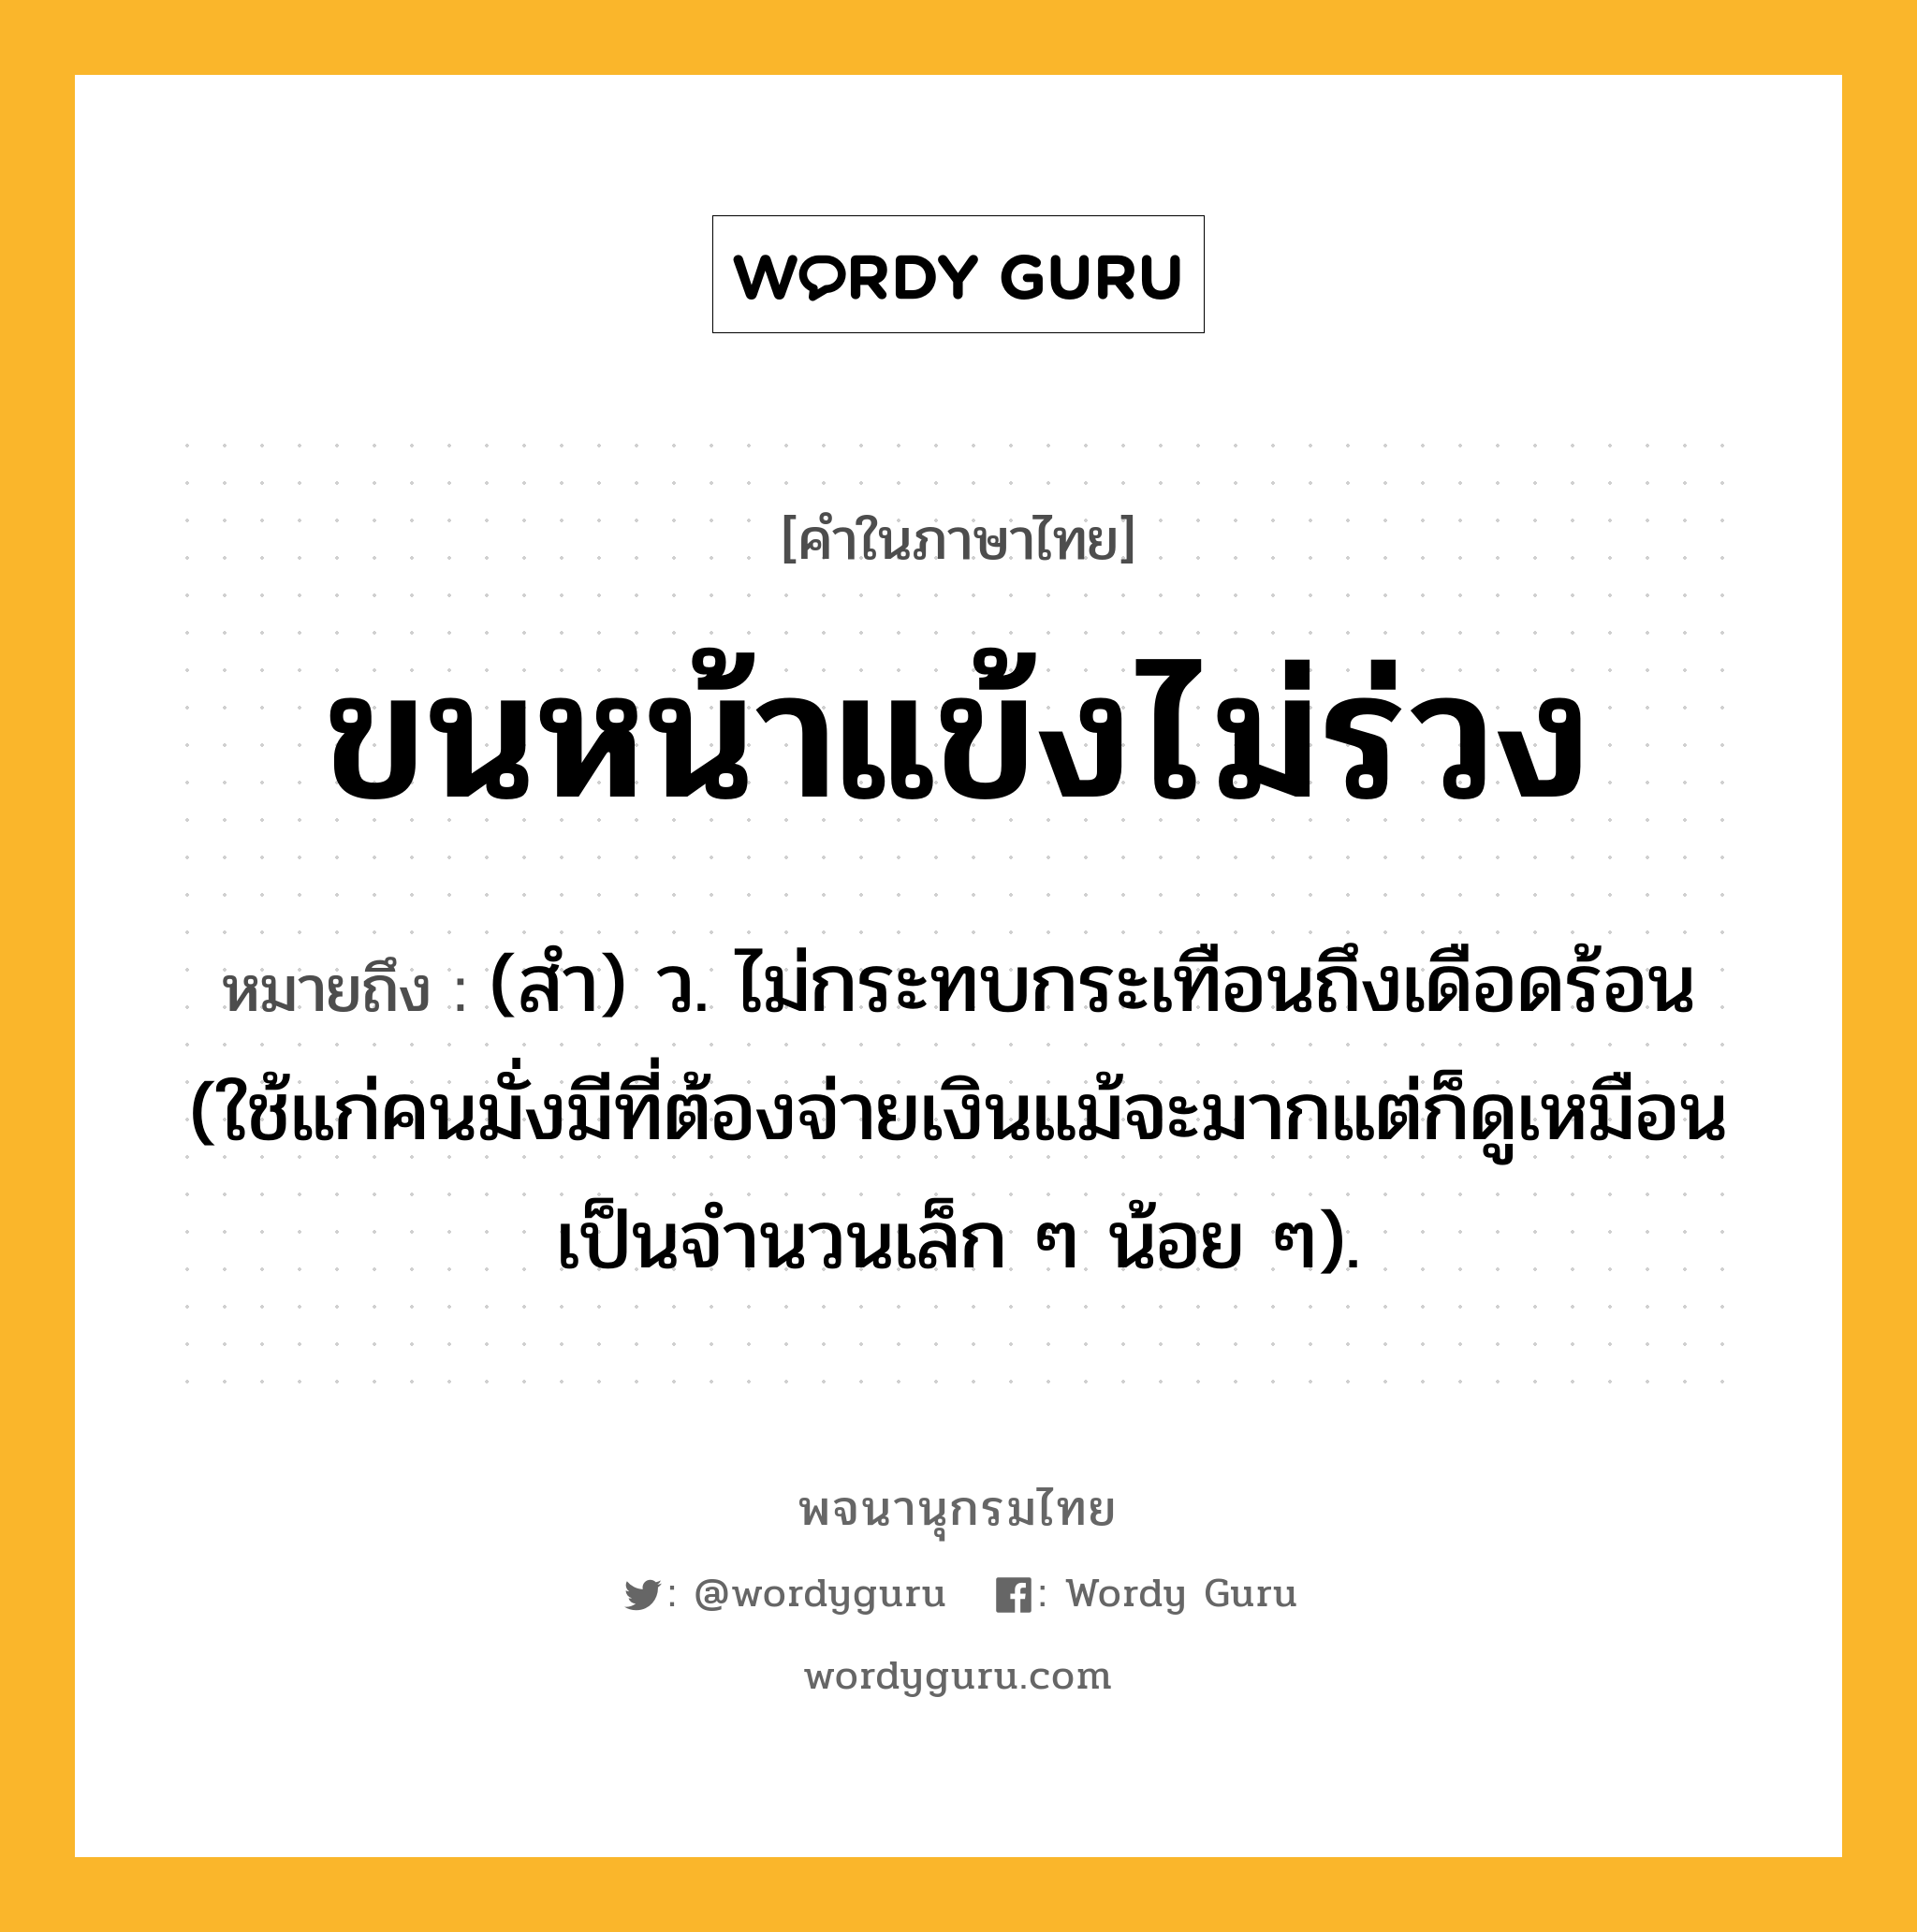 ขนหน้าแข้งไม่ร่วง ความหมาย หมายถึงอะไร?, คำในภาษาไทย ขนหน้าแข้งไม่ร่วง หมายถึง (สํา) ว. ไม่กระทบกระเทือนถึงเดือดร้อน (ใช้แก่คนมั่งมีที่ต้องจ่ายเงินแม้จะมากแต่ก็ดูเหมือนเป็นจํานวนเล็ก ๆ น้อย ๆ).